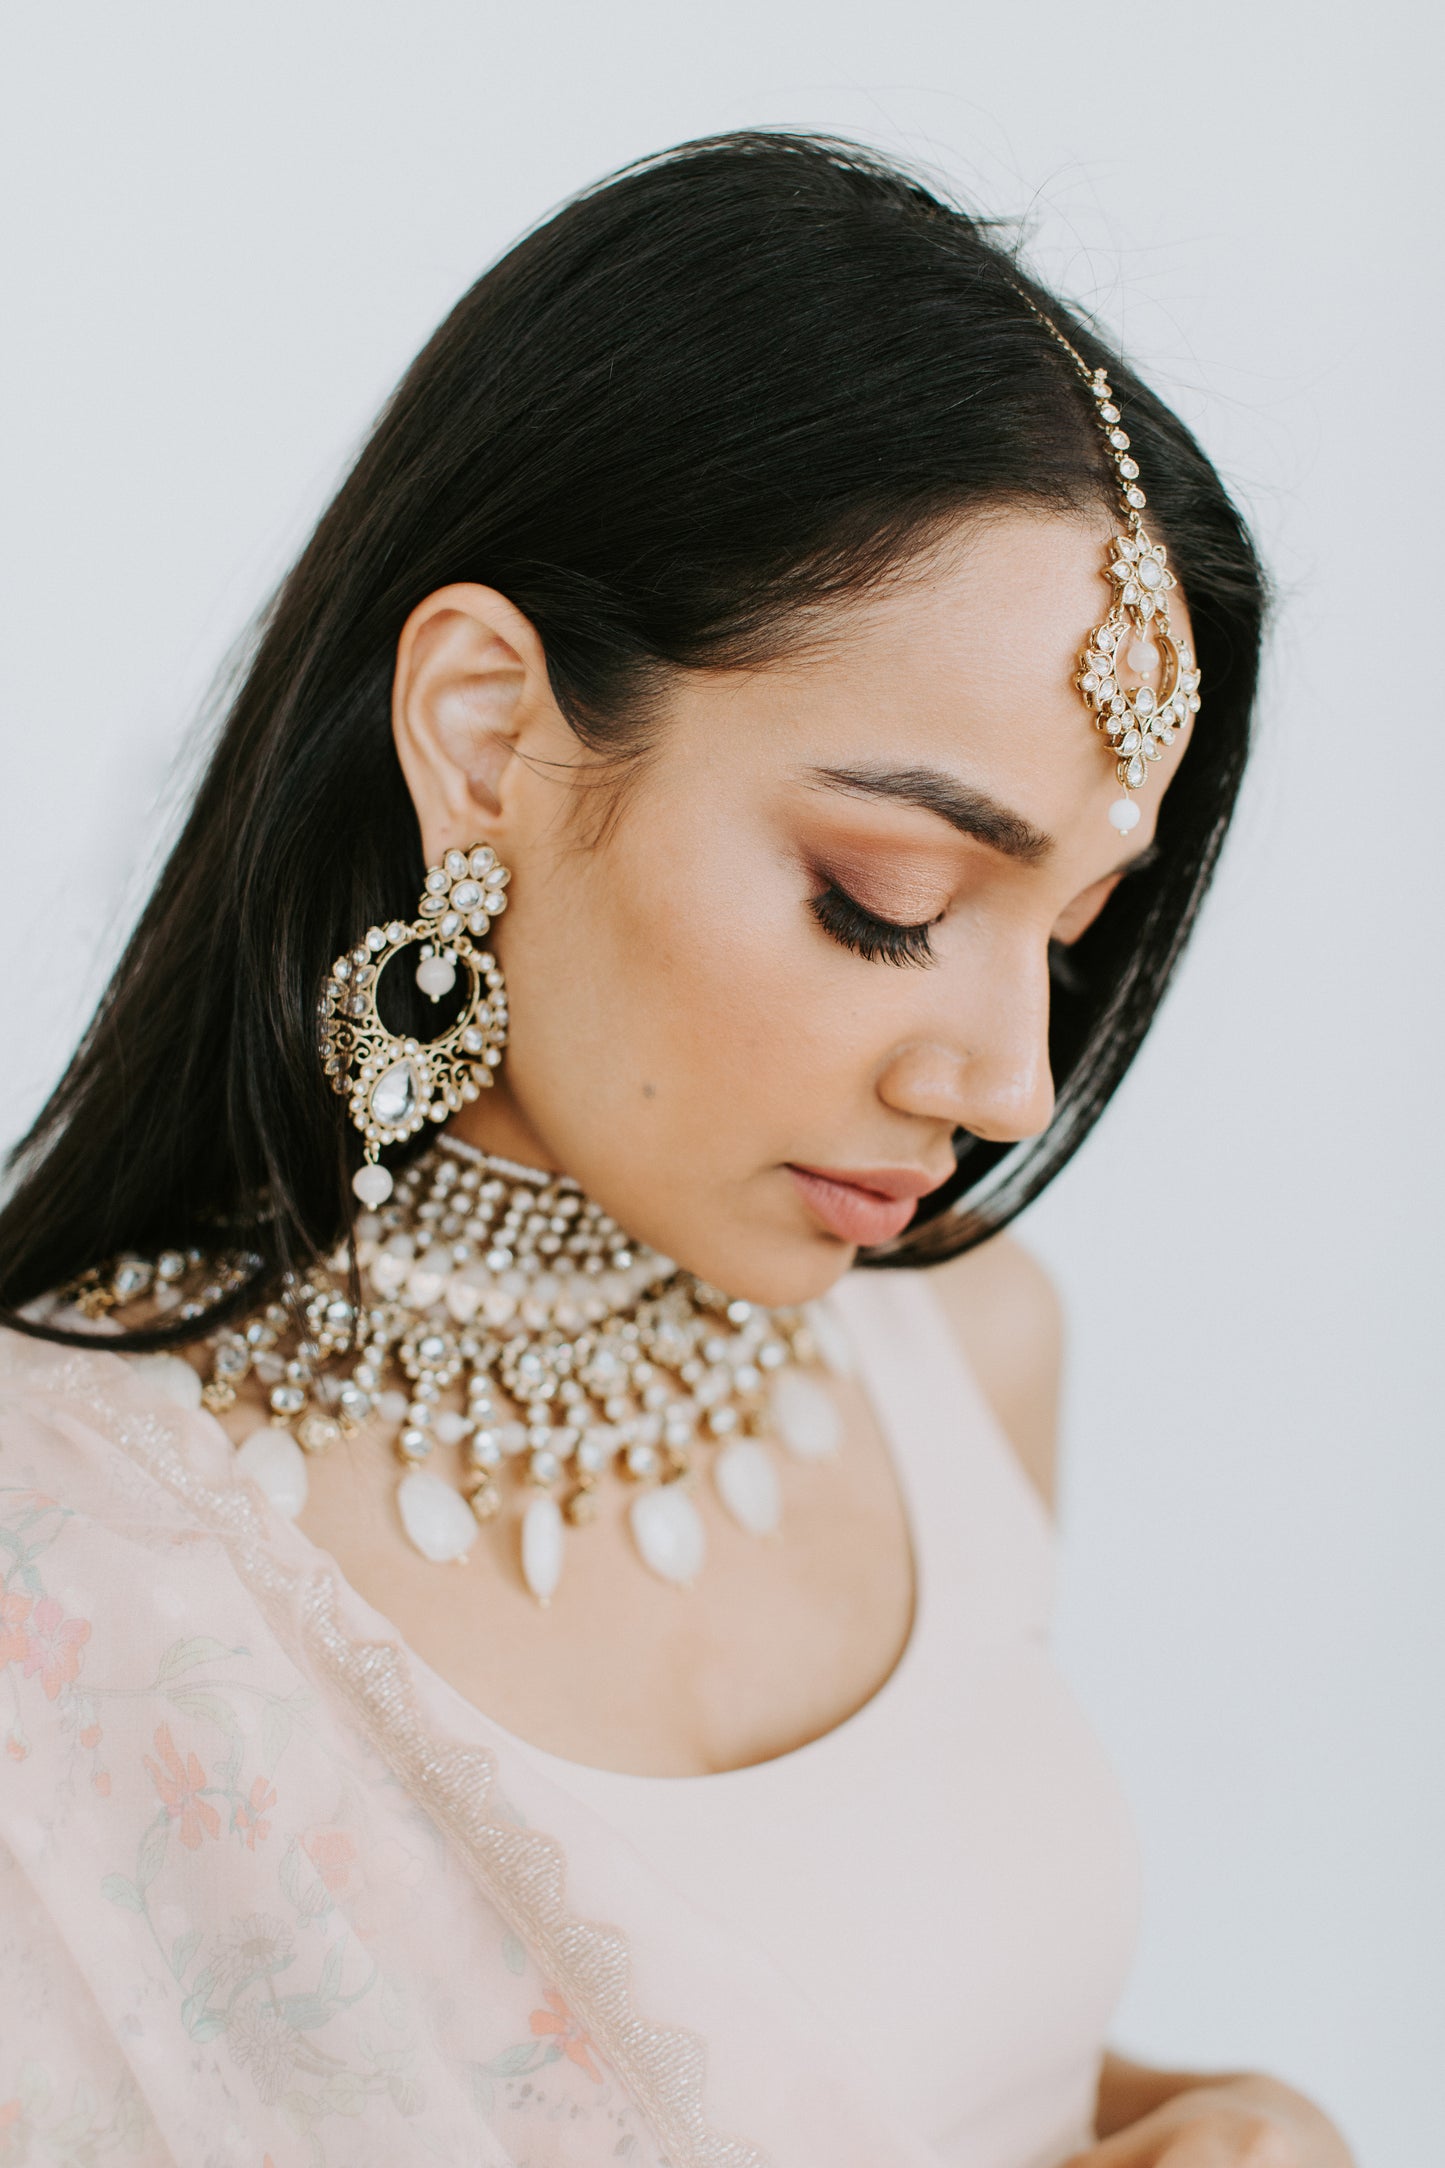 Banglez South Asian Bangles and Jewelry, Indian Jewellery, Pakistani Jewelry